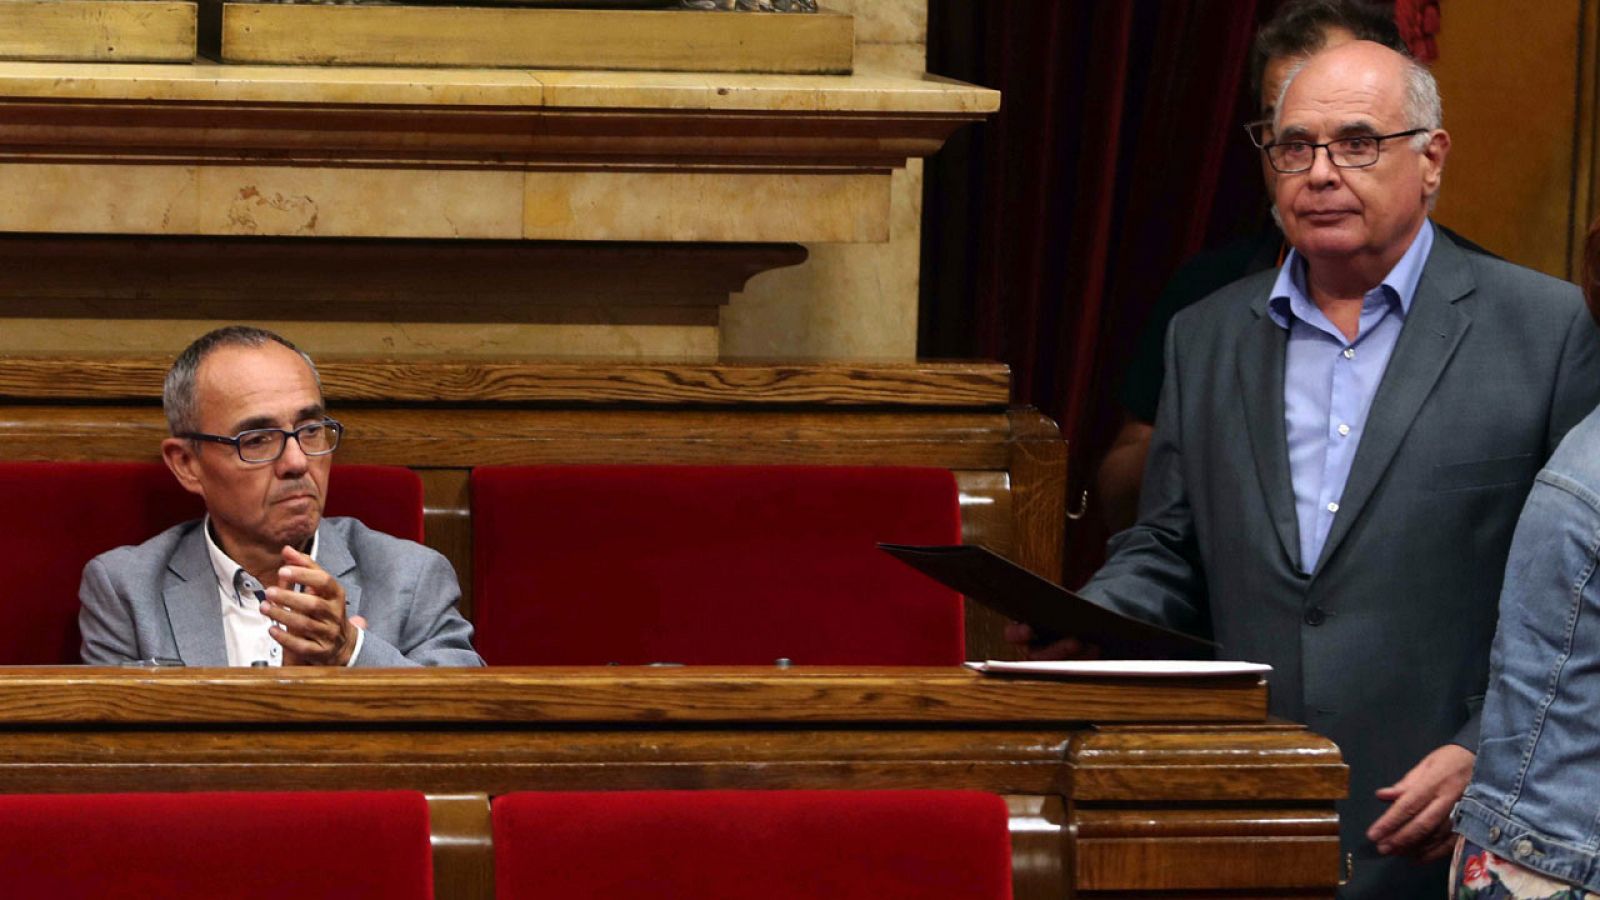 El presidente del grupo parlamentario de Catalunya Si que es Pot, Lluís Rabell, es aplaudido por el portavoz de la formación, Joan Coscubiela, tras defender la posición de su grupo ante la ley del referéndum en el Parlament.